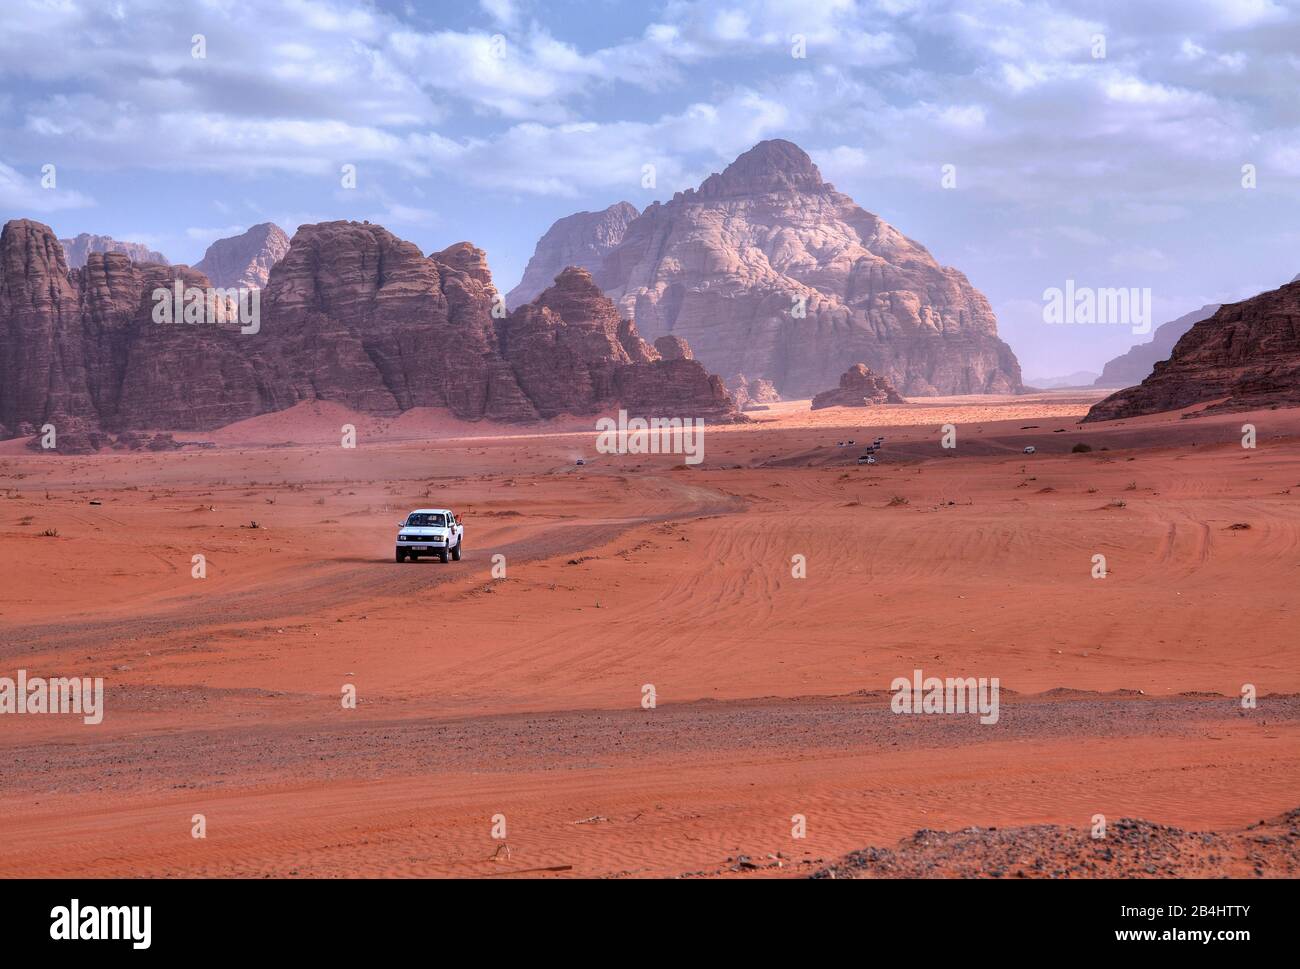 Landschaft der Felsen- und Sandwüste Wadi Rum mit Versorgungsfahrzeug östlich von Aqaba Aqaba, Jordanien Stockfoto